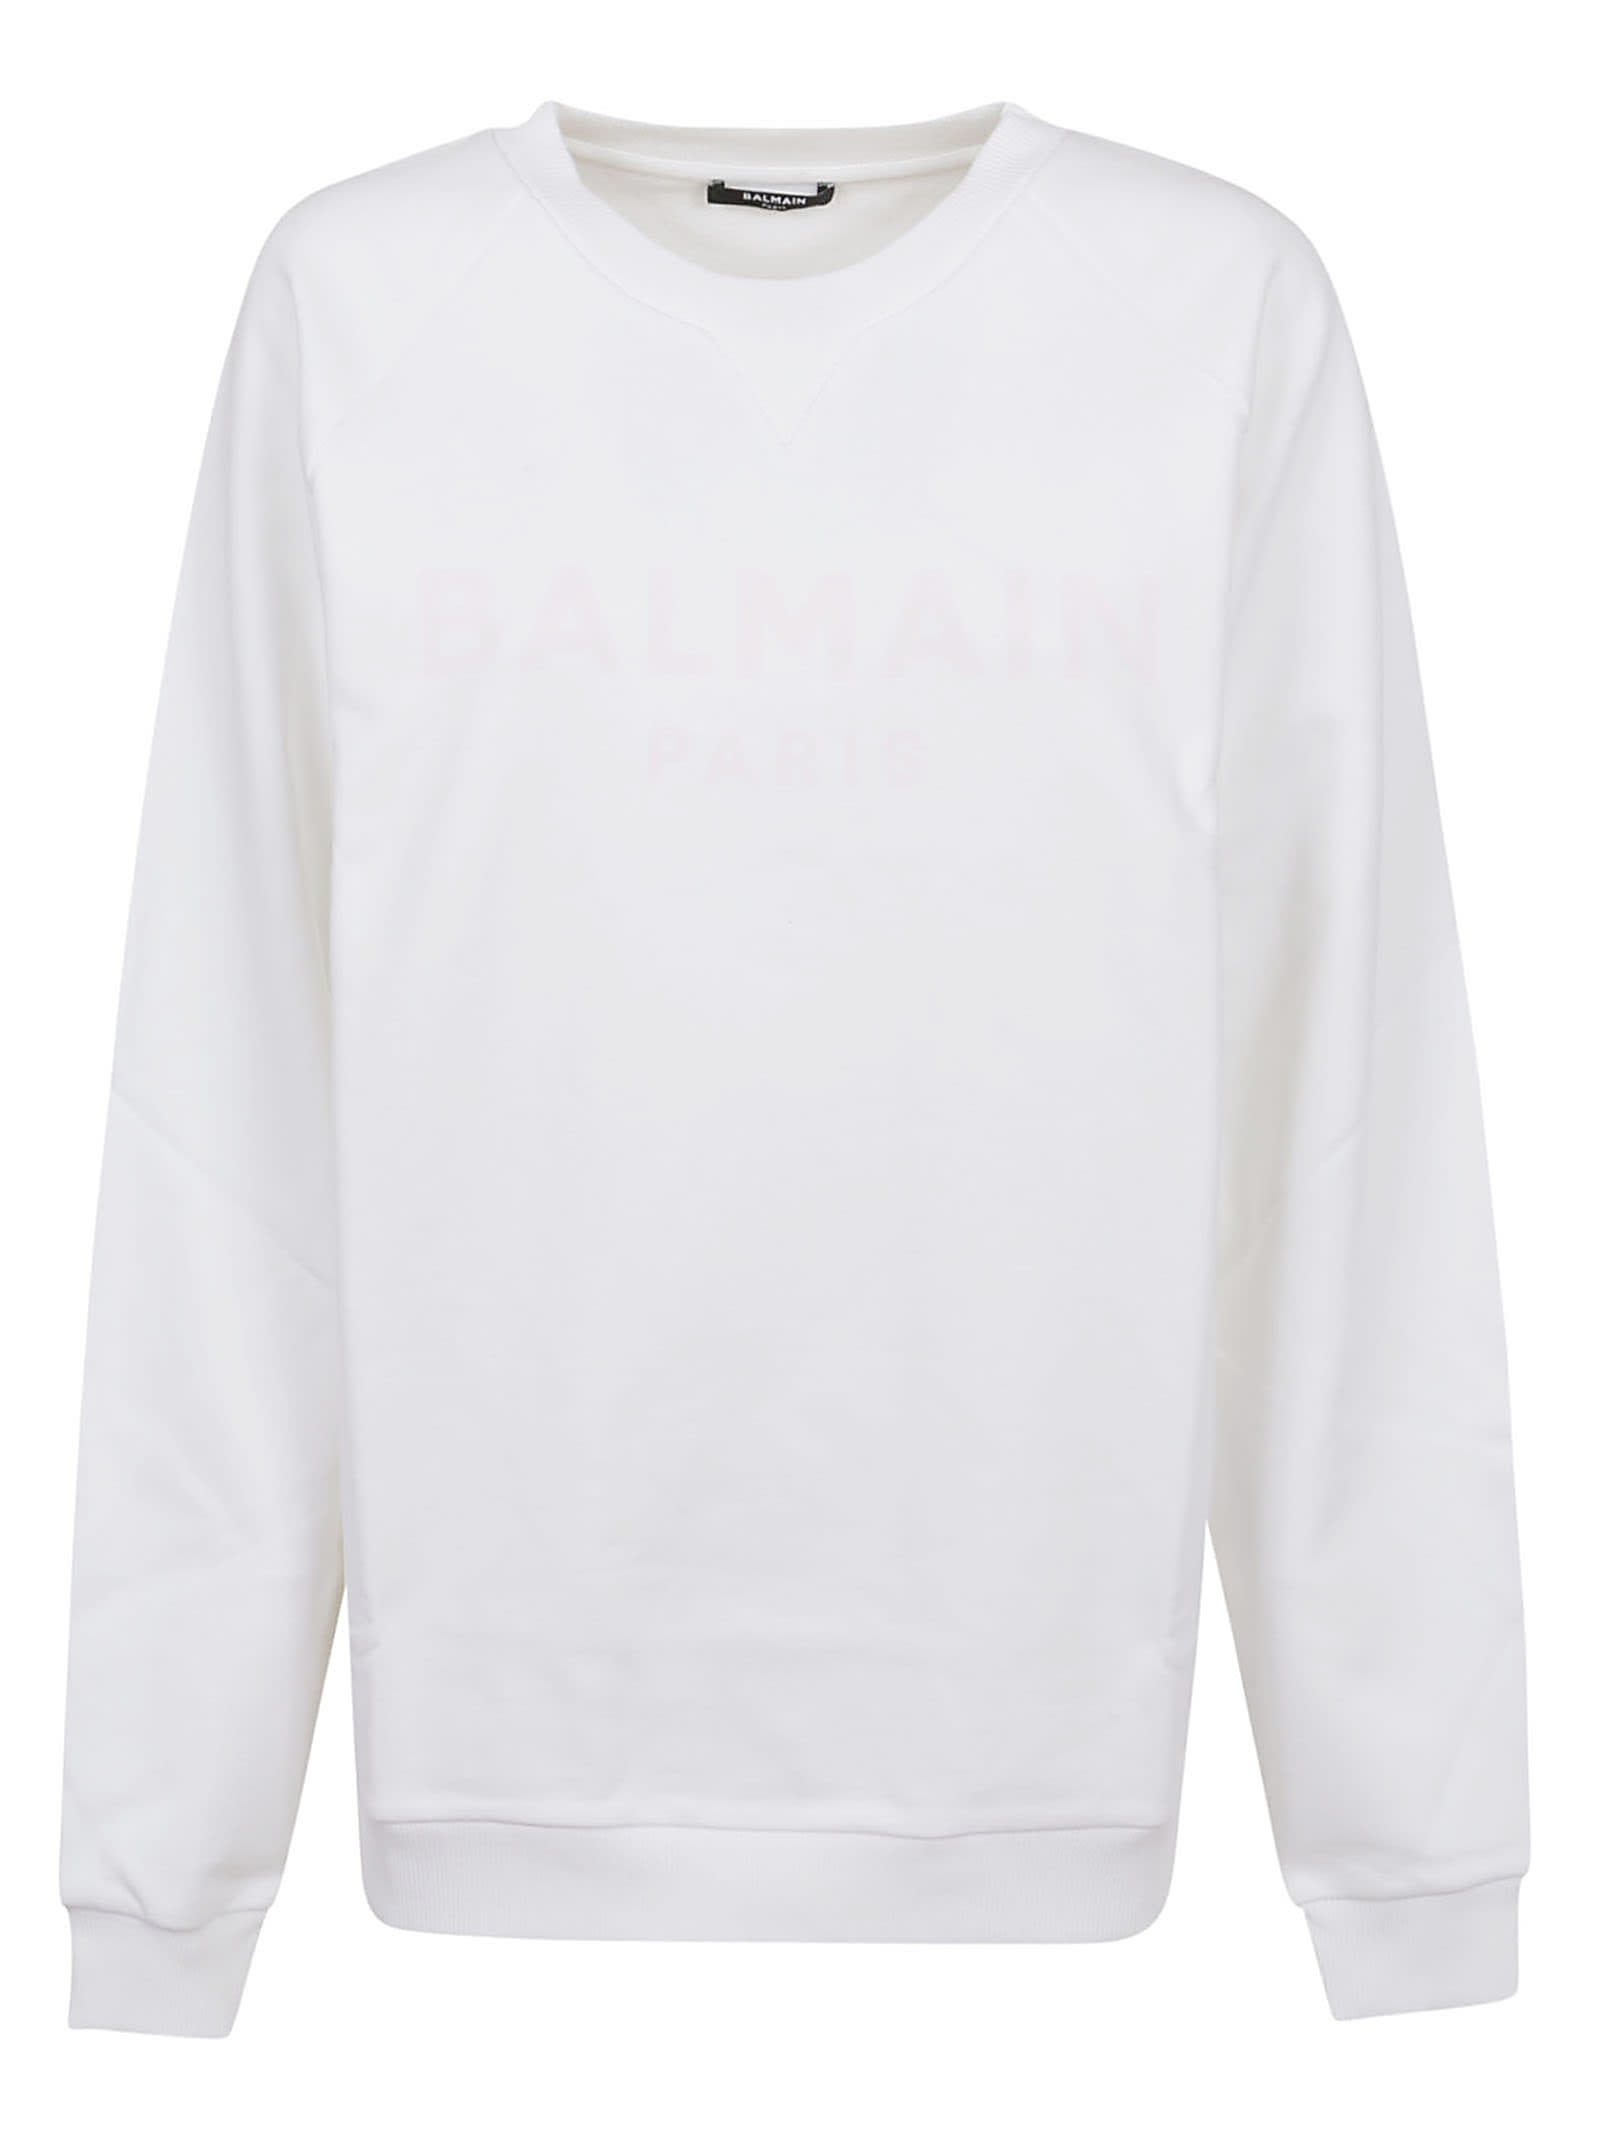 Balmain Printed Logo Sweatshirt - Eco Sustainable